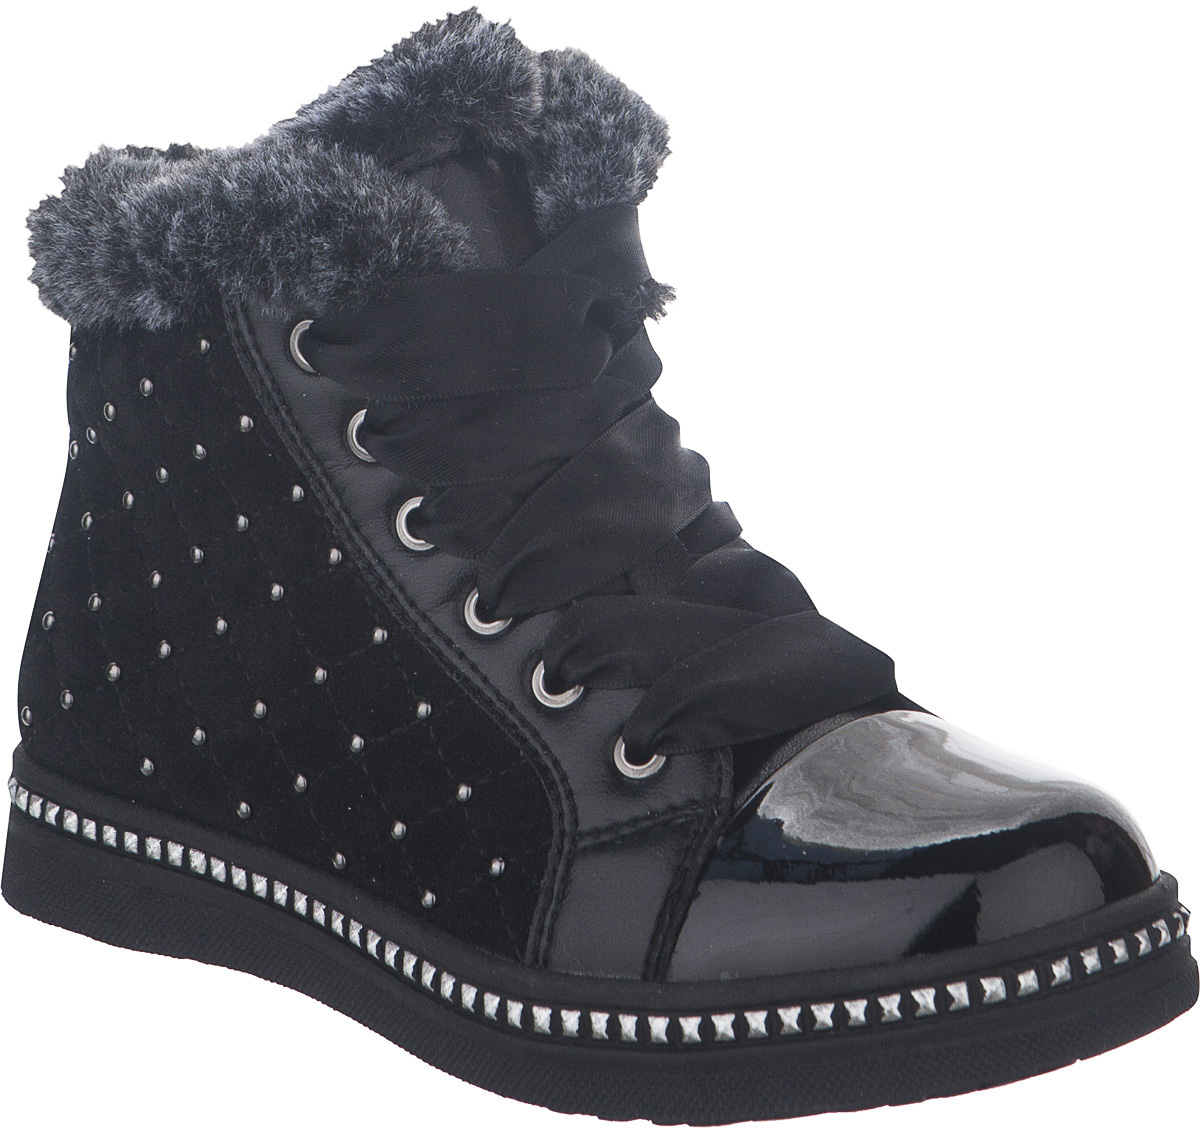 Ботинки для девочки Kapika, цвет: черный. 53259. Размер 32